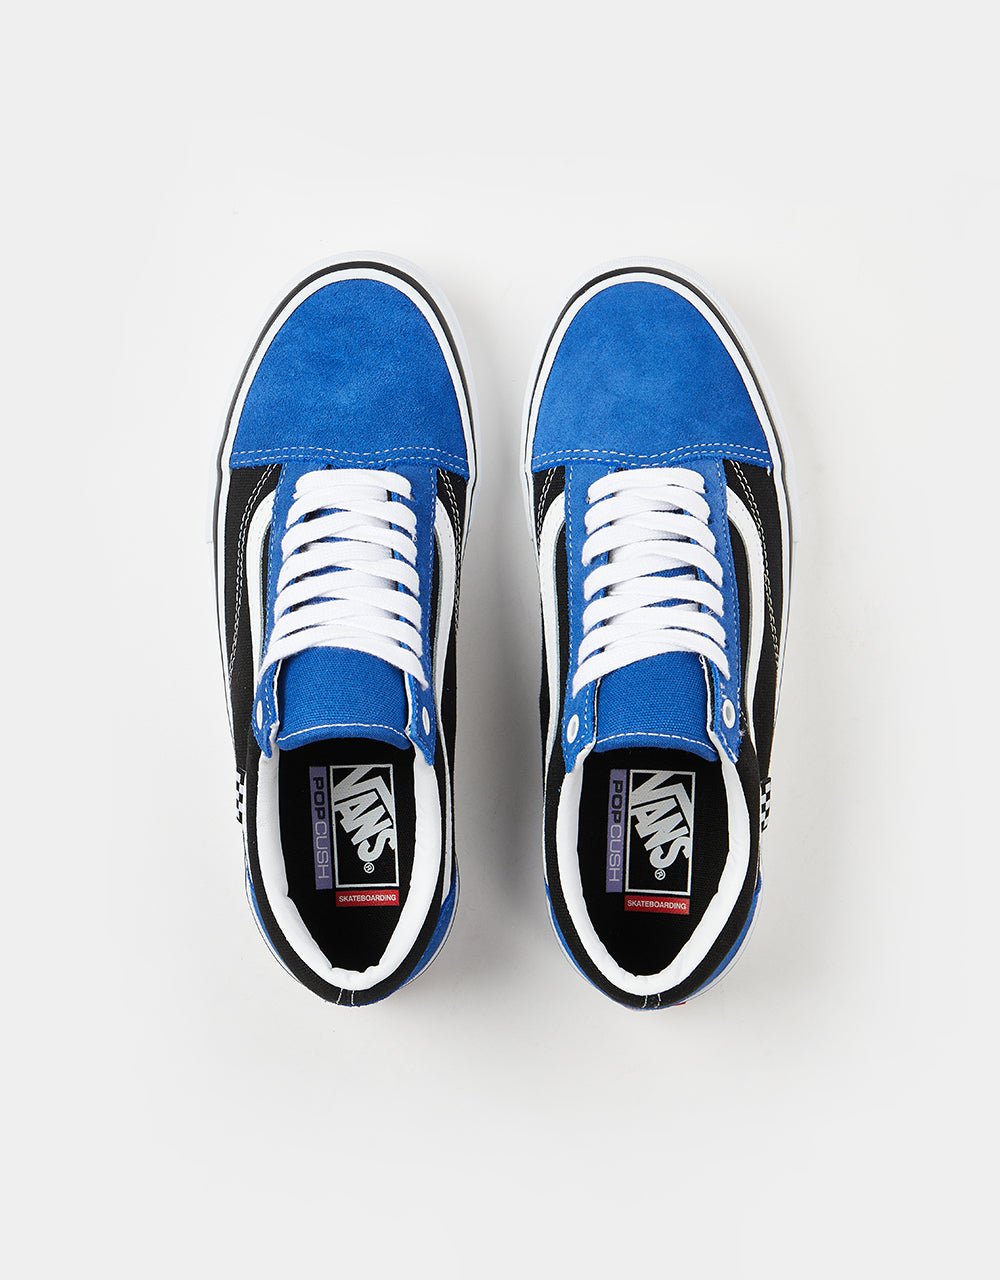 Vans Skate Old Skool Skate Shoes -  Blue/Black/White